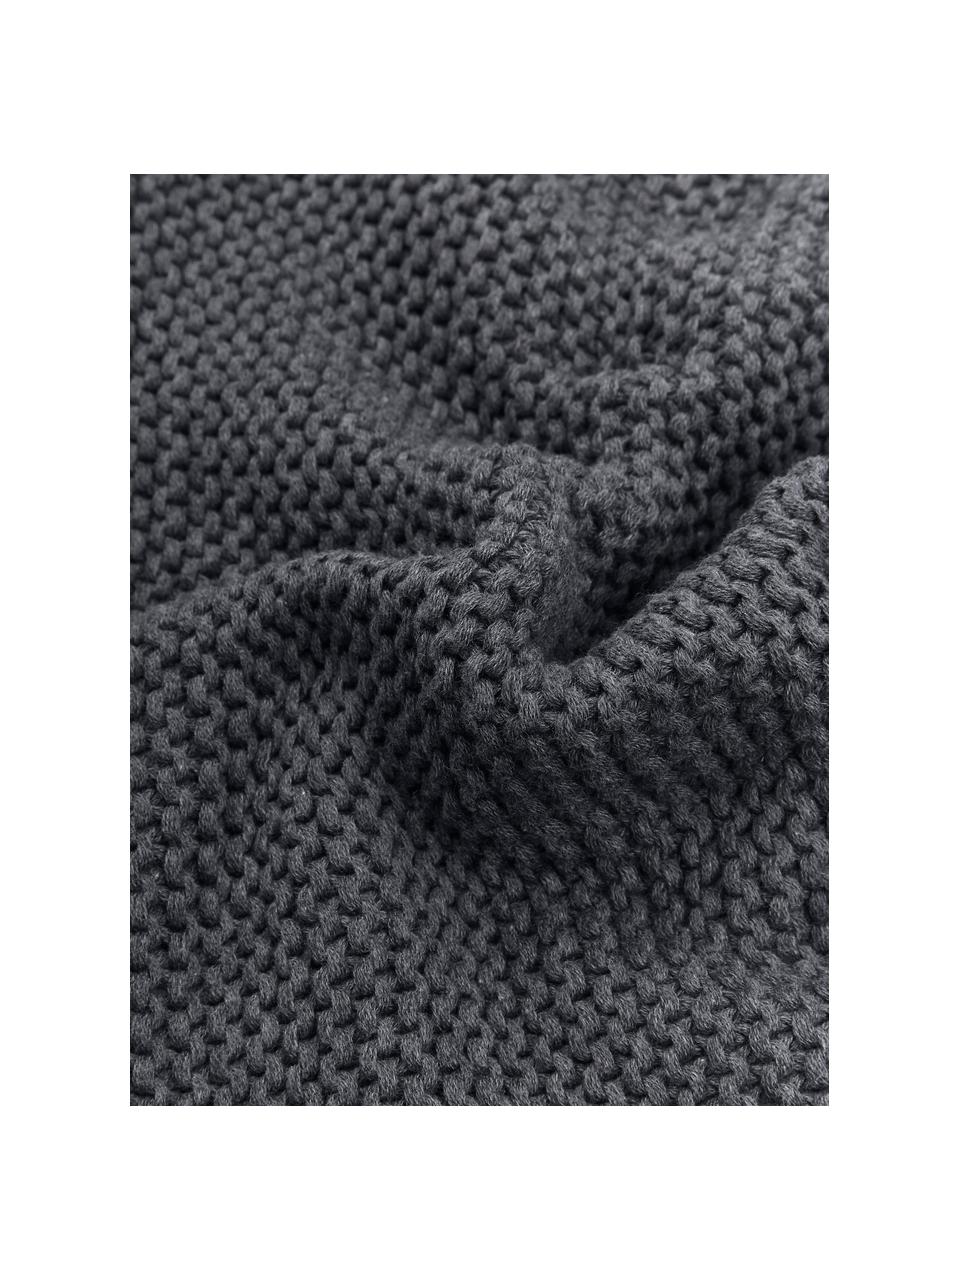 Housse de coussin tricot gris foncé Adalyn, 100 % coton bio, certifié GOTS, Gris foncé, larg. 40 x long. 40 cm